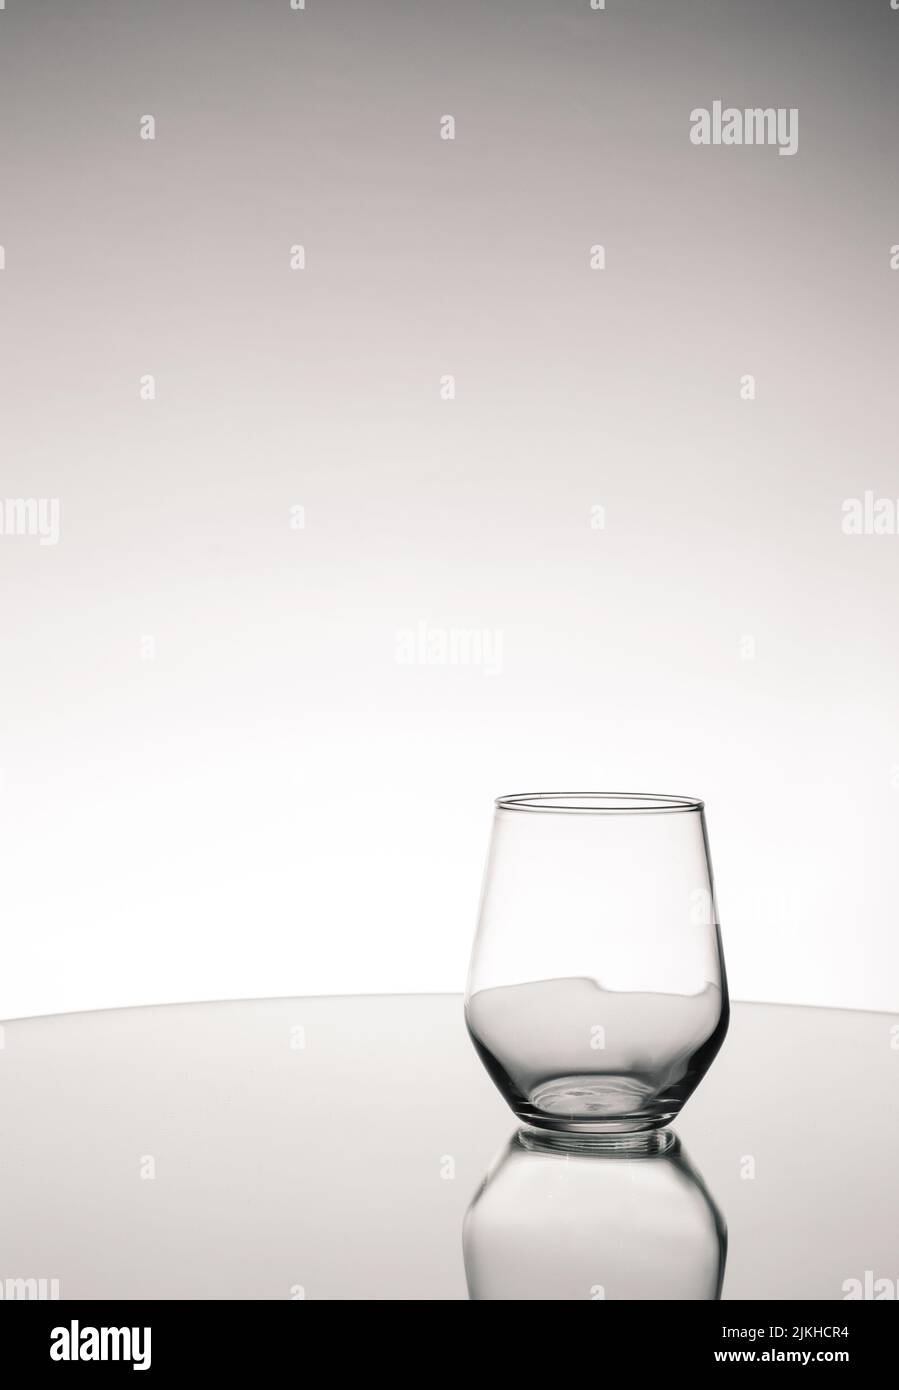 Prise de vue en niveaux de gris d'une coupelle en verre vide avec réflexion sur une surface miroir Banque D'Images